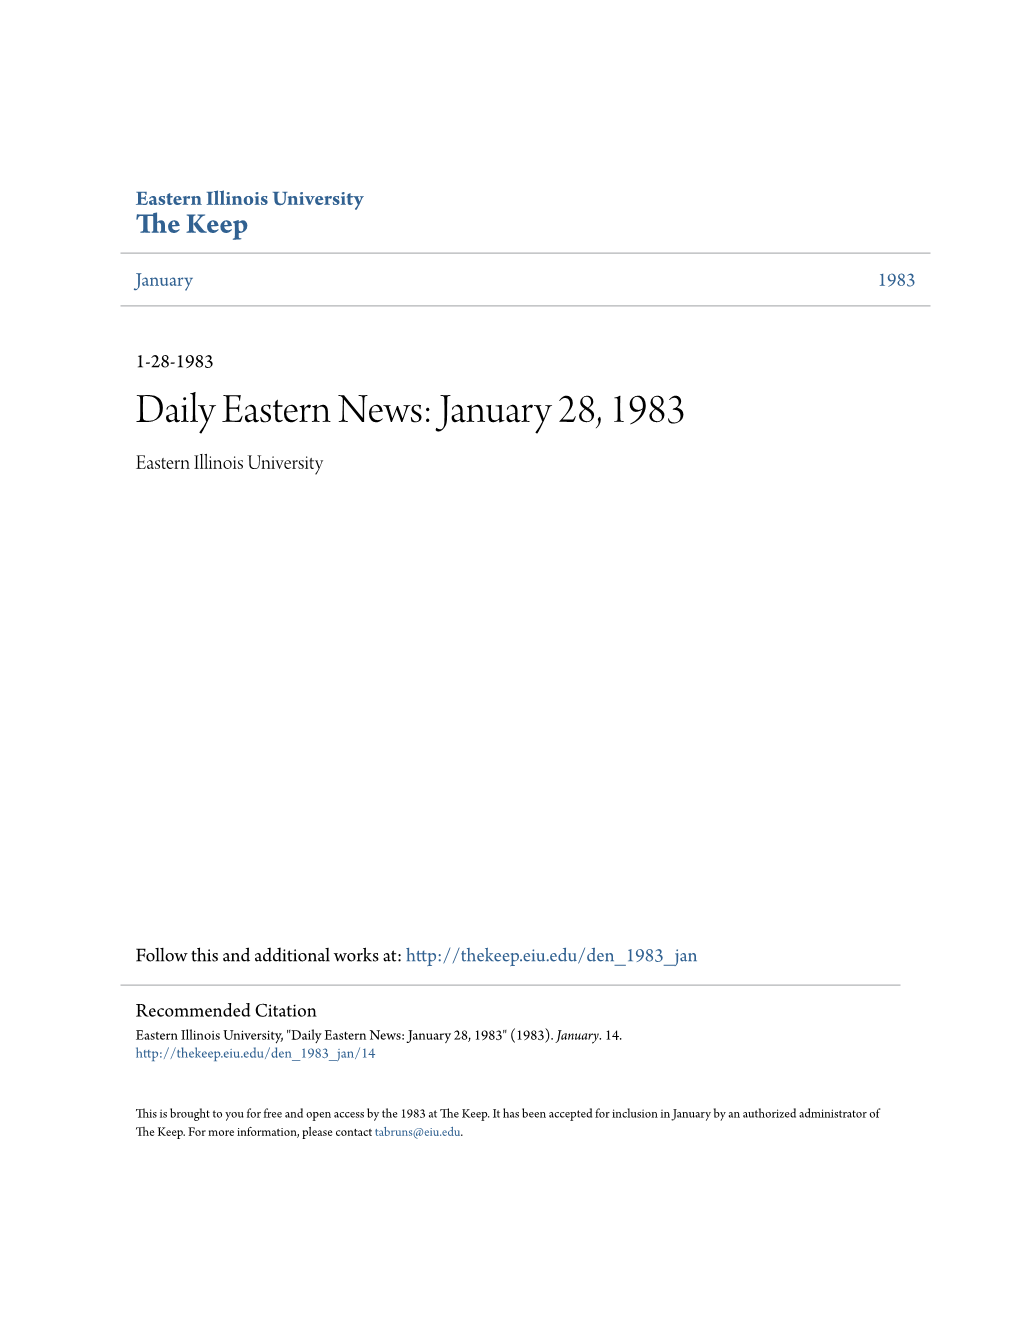 Eastern News: January 28, 1983 Eastern Illinois University